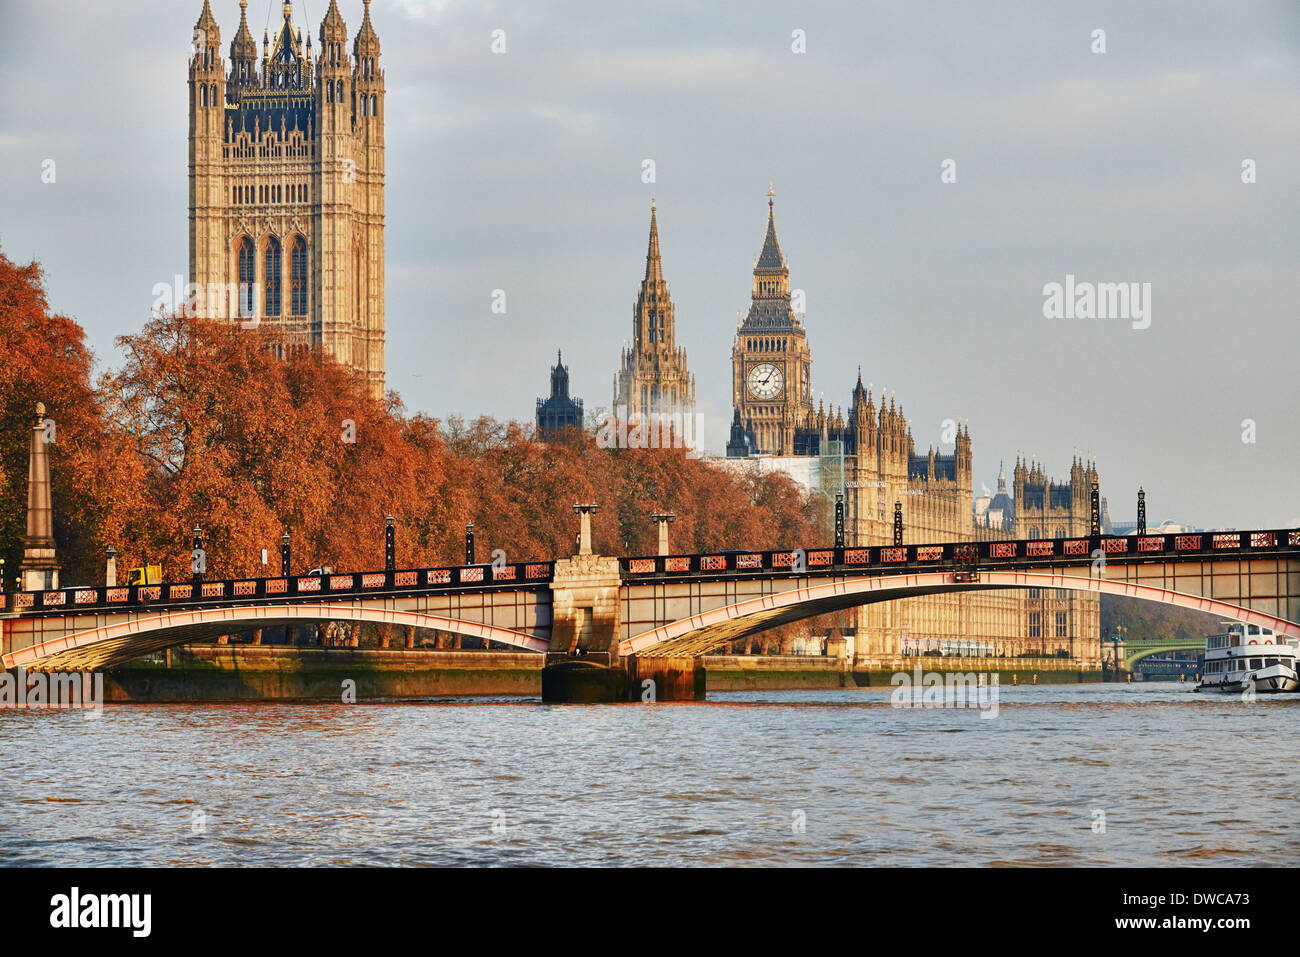 Avis de Lambeth Bridge, du Parlement et de la Tamise, Londres, UK Banque D'Images